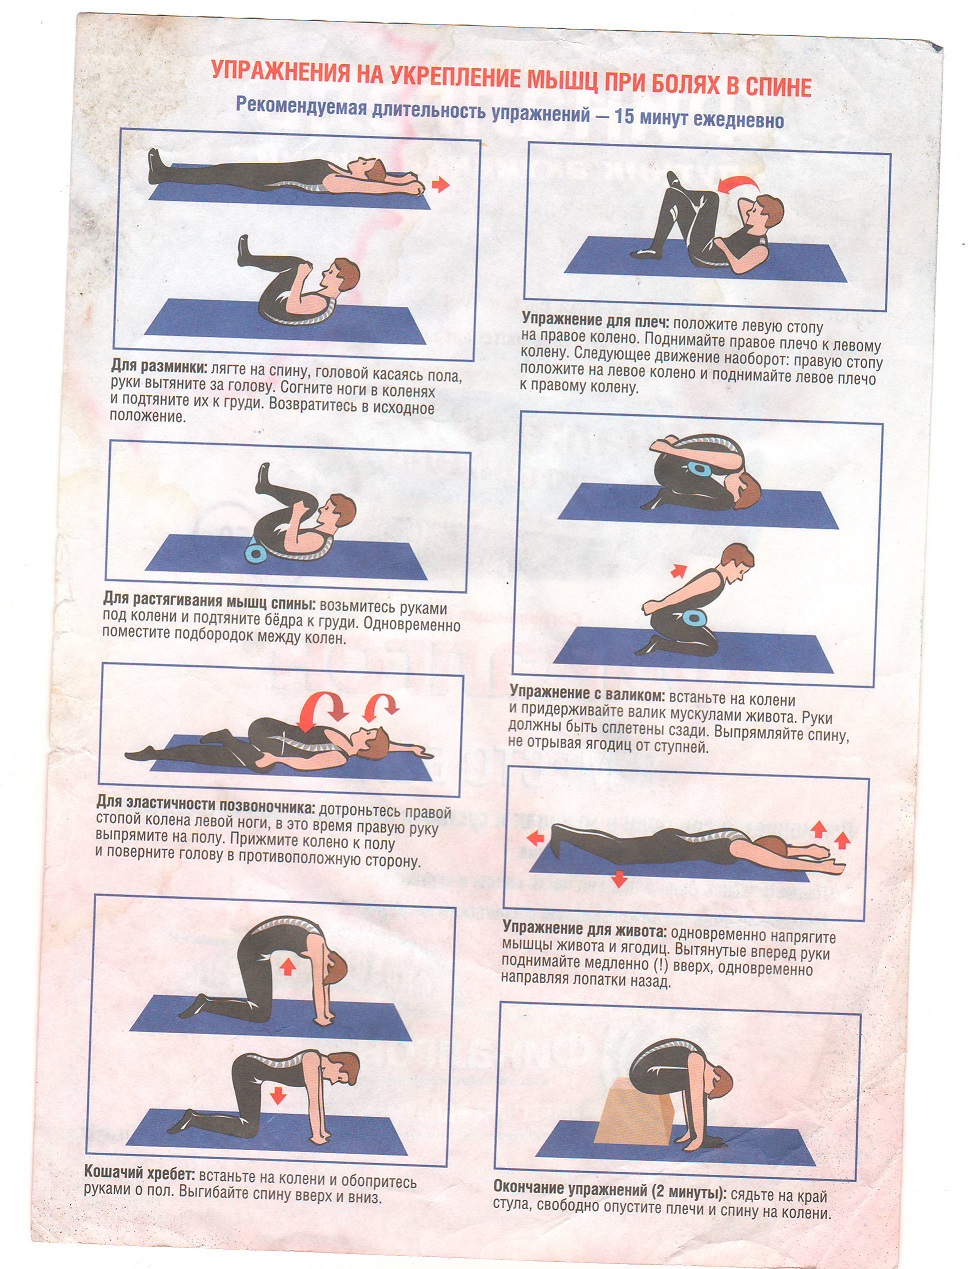 Греть поясницу при боли. Упражнения для укрепления мышц позвоночника и поясницы. Упражнения ЛФК для спины при болях в пояснице. Комплекс упражнений при боли в спине и пояснице. Гимнастика для спины при болях в пояснице для мужчин.